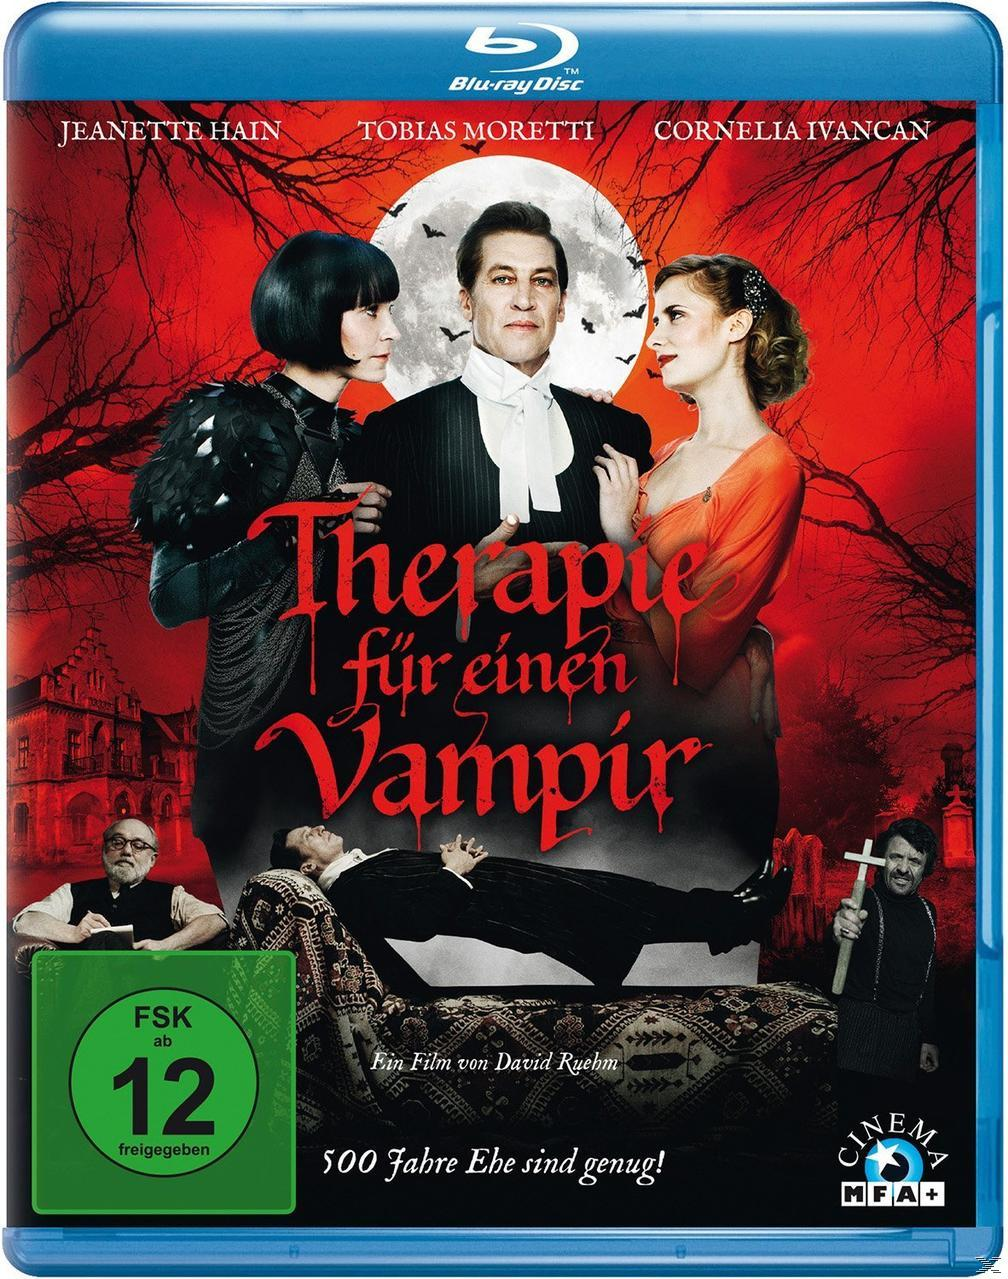 Blu-ray für Vampir Therapie einen